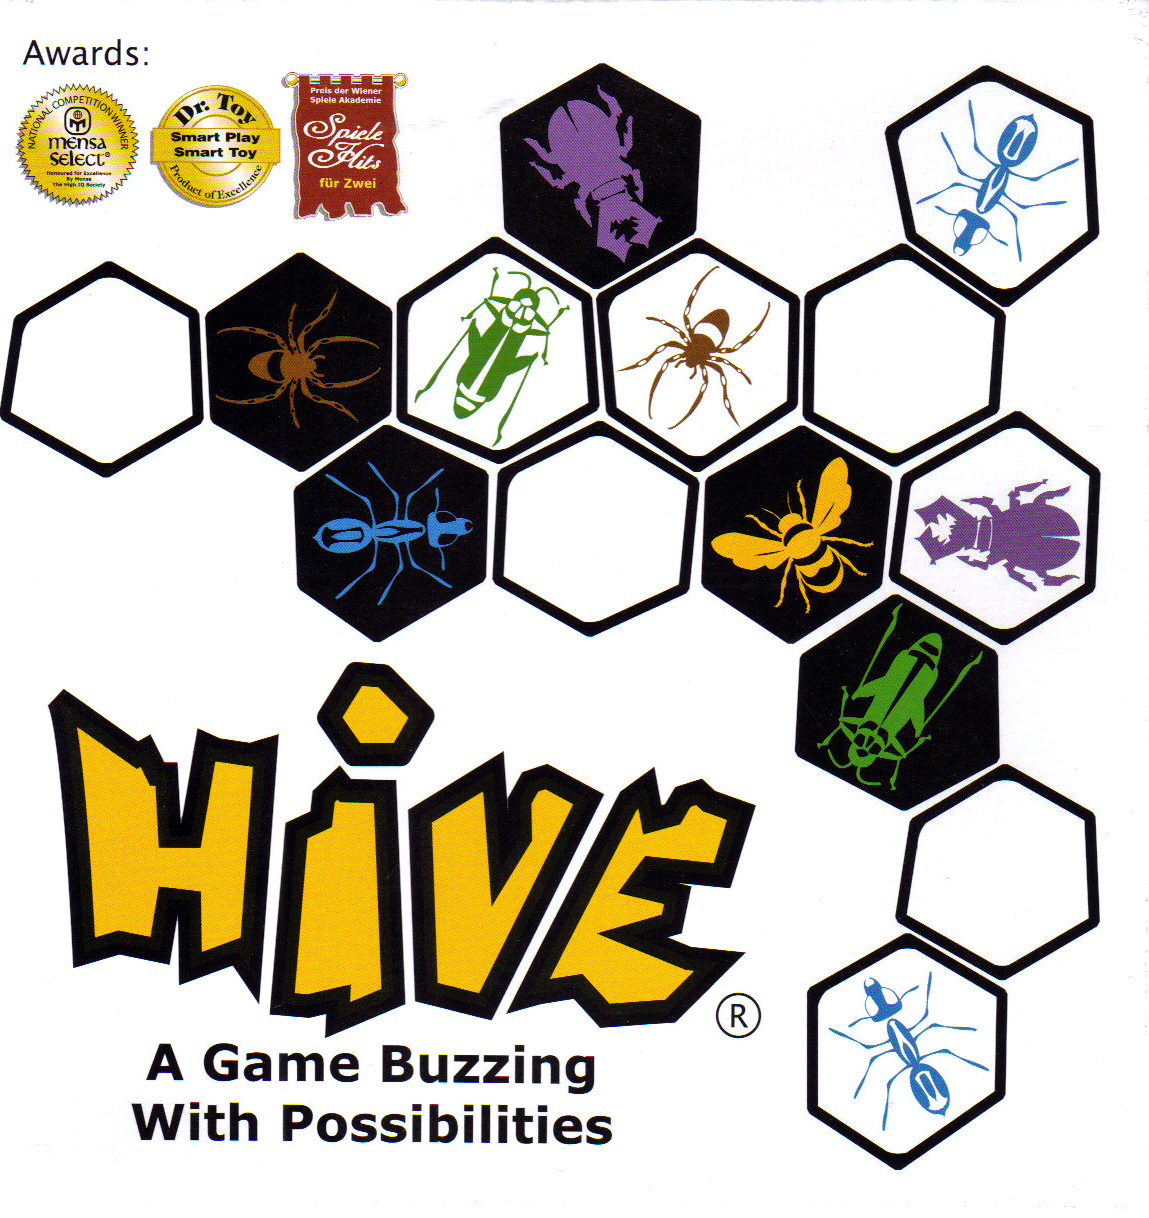 Hive box cover